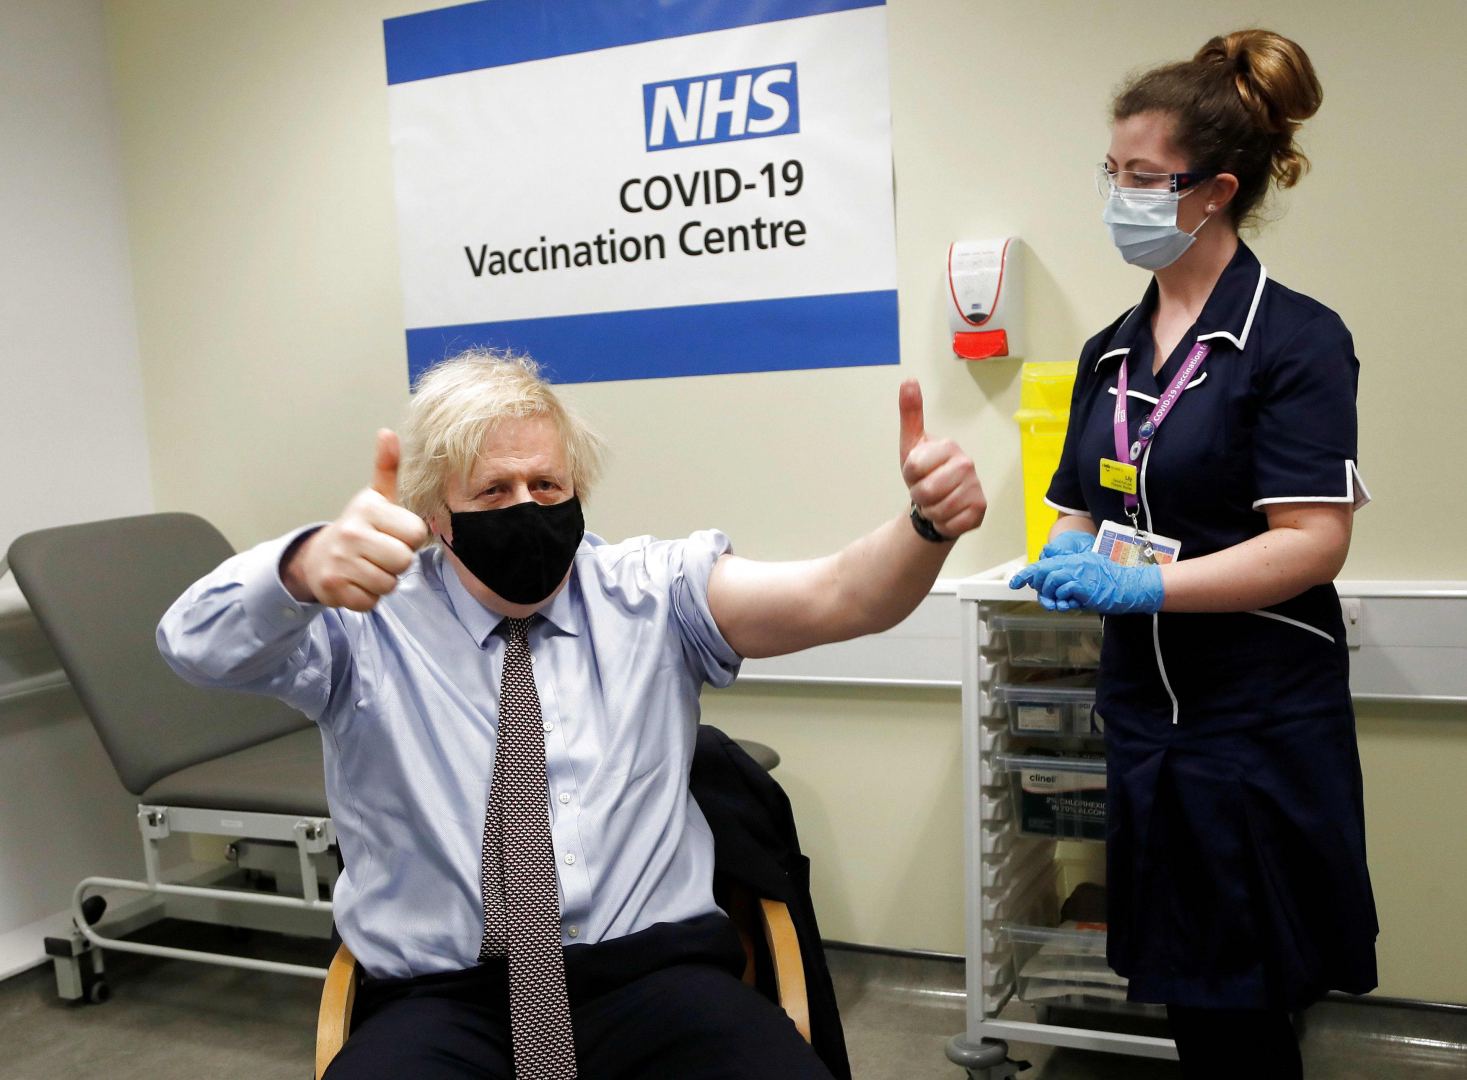 Boris Conson koronavirusa qarşı peyvəndin ikinci dozasını vurdurub